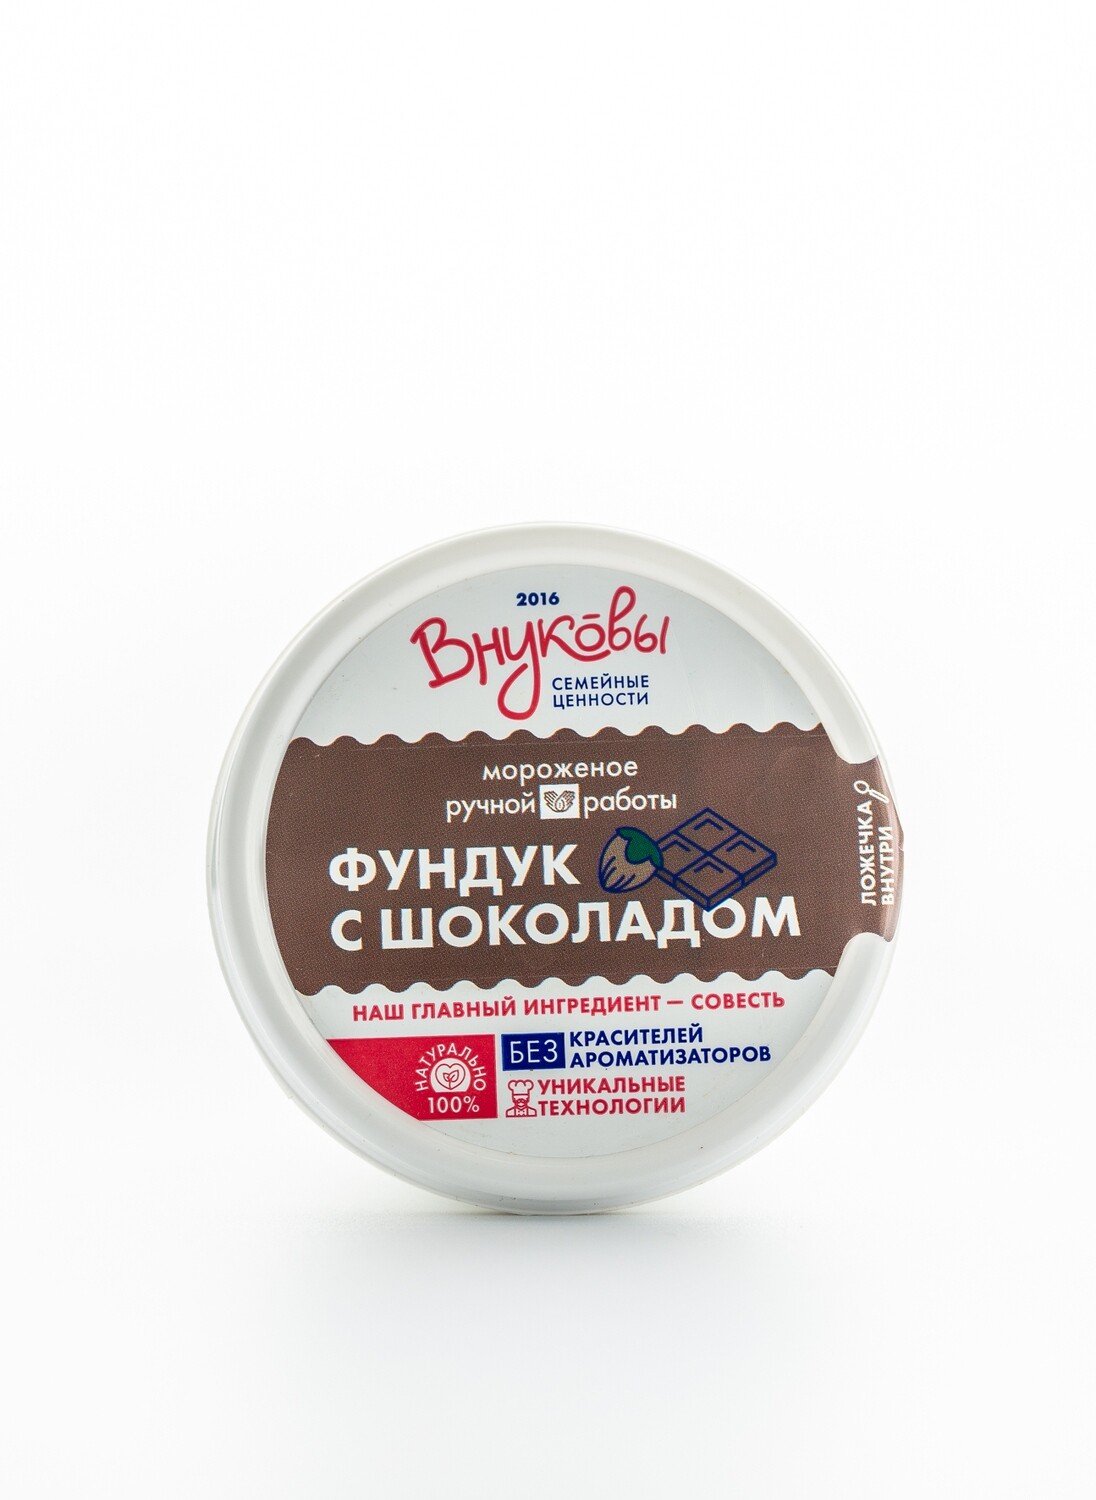 Мороженое Фундук с шоколадом